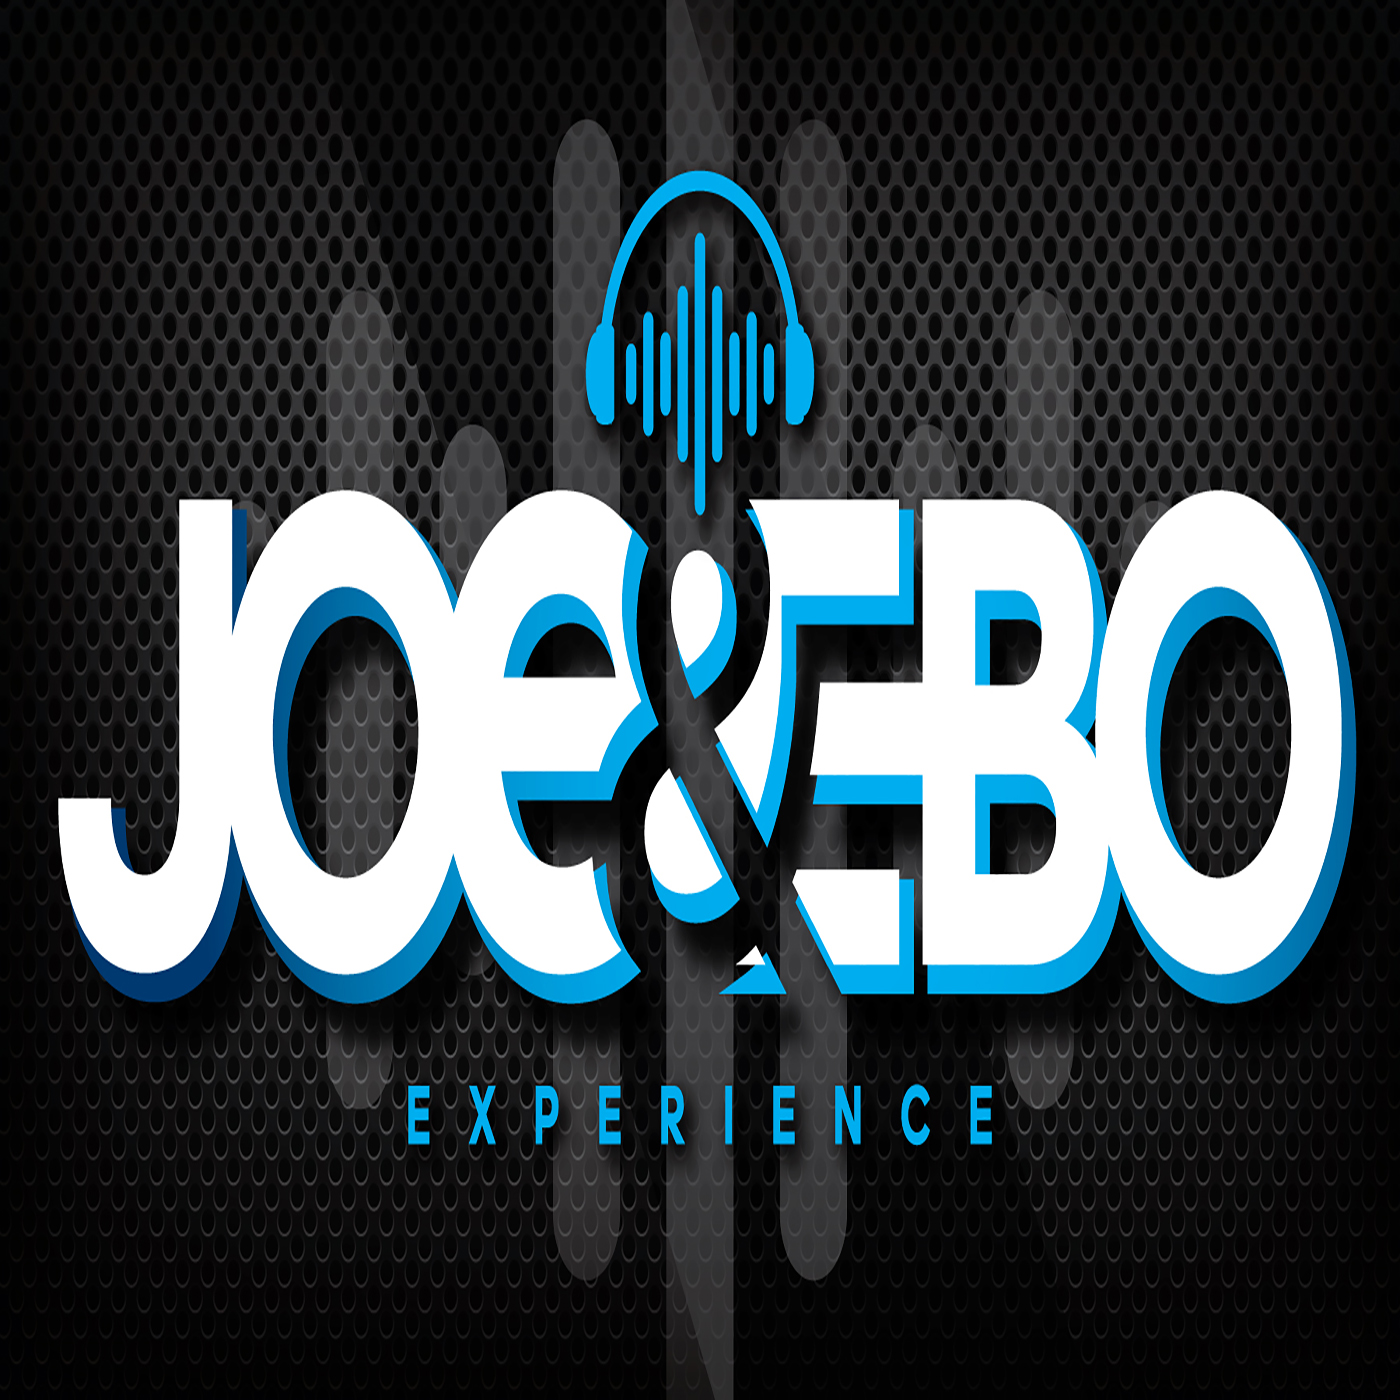 Joe & Ebo Experience: We Need Sports